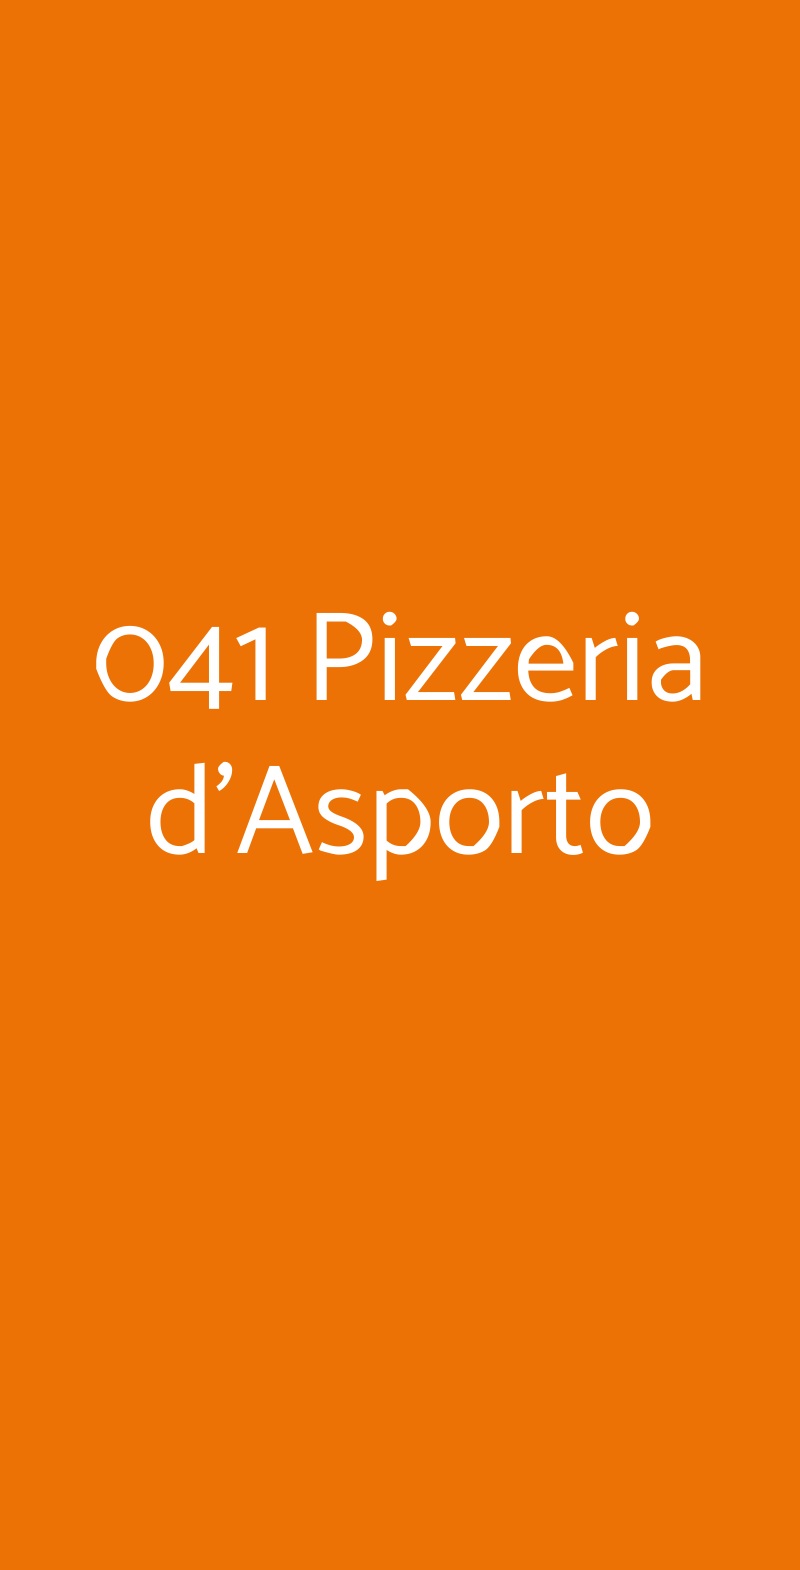 041 Pizzeria d'Asporto Mestre menù 1 pagina